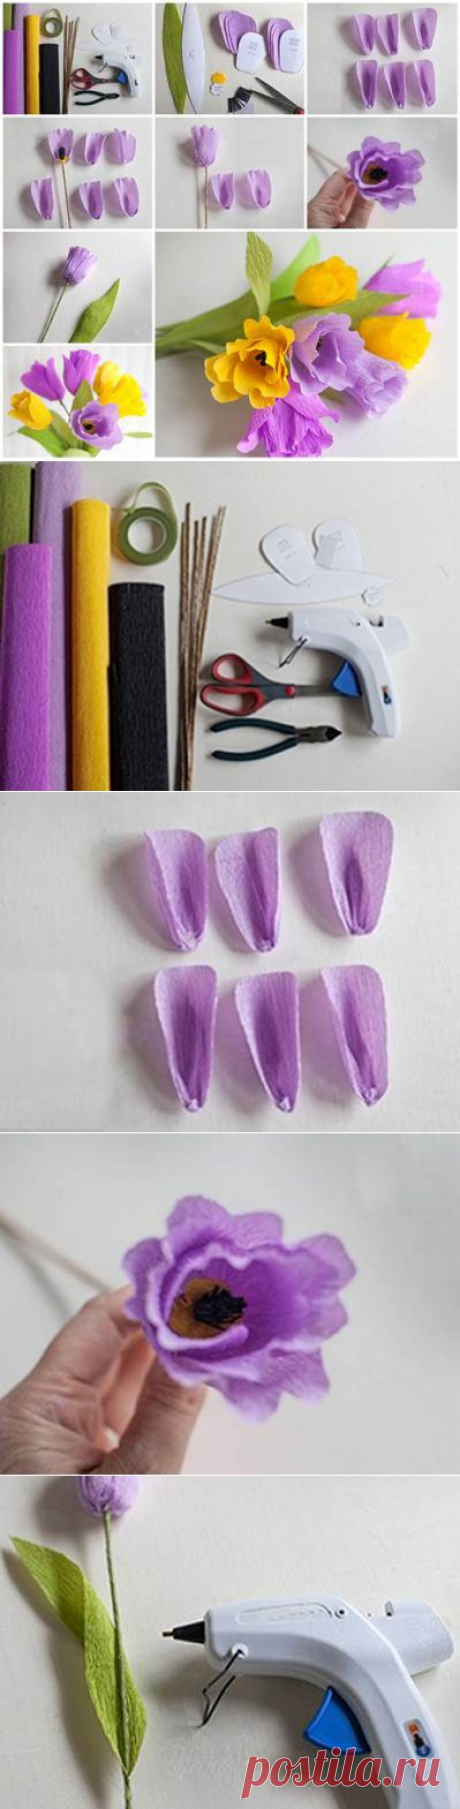 Как сделать красивые Креп Бумажные цветы | iCreativeIdeas.com